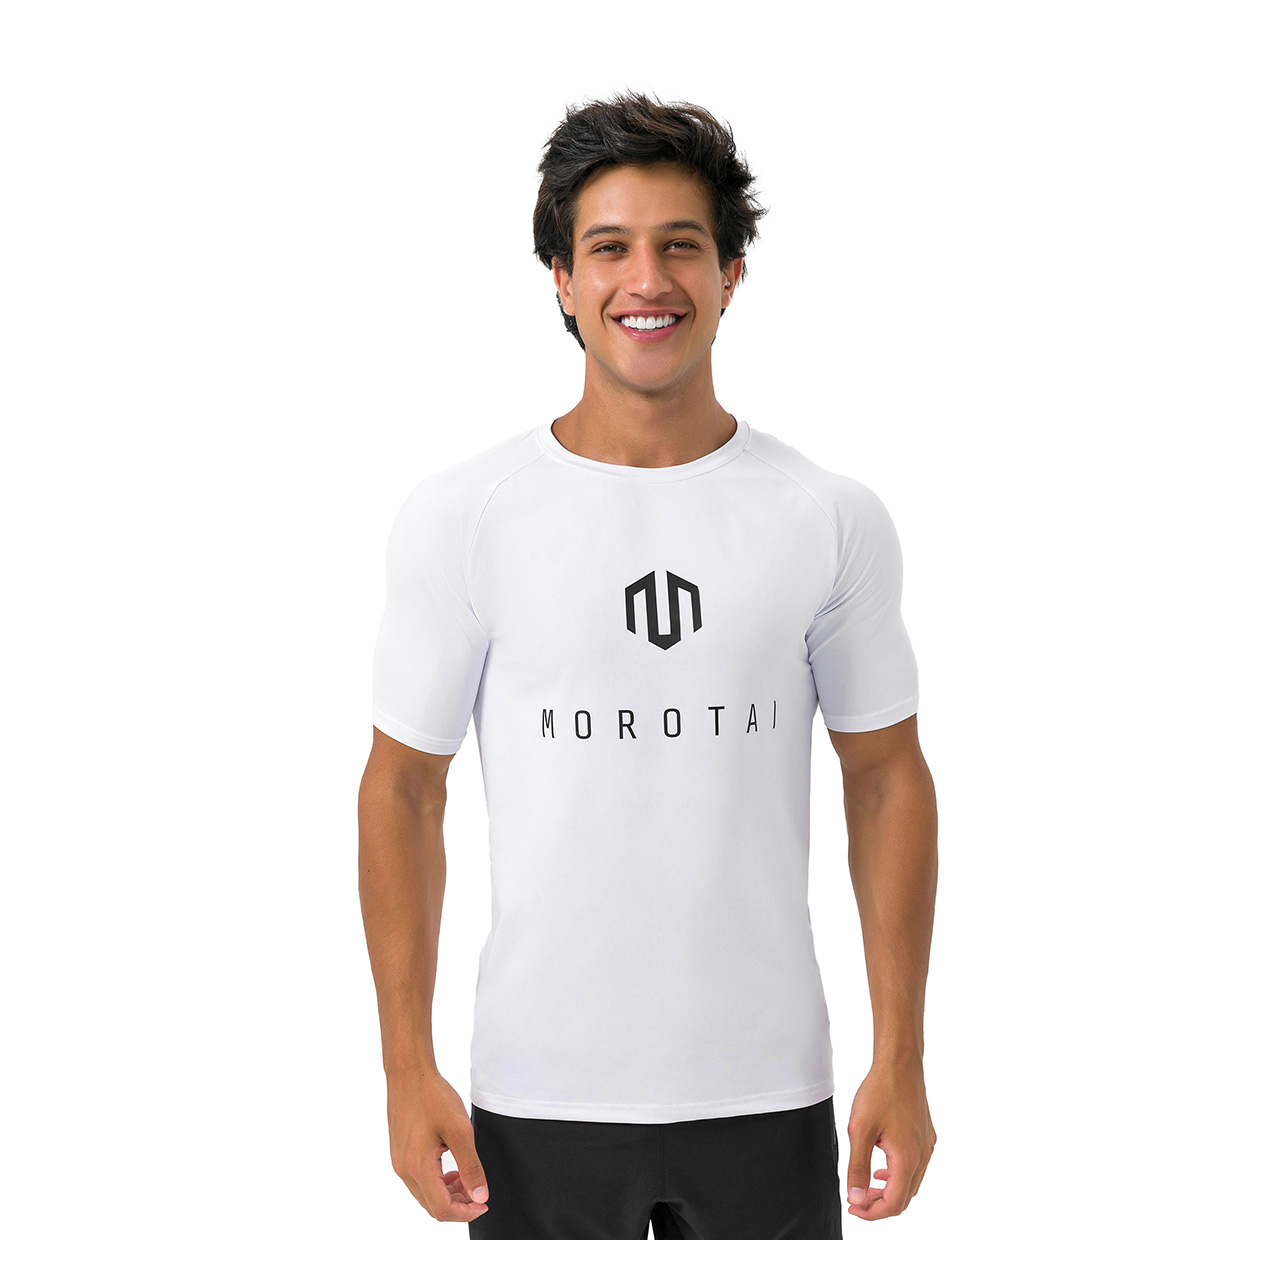 Herren Corporate Basic T-Shirt